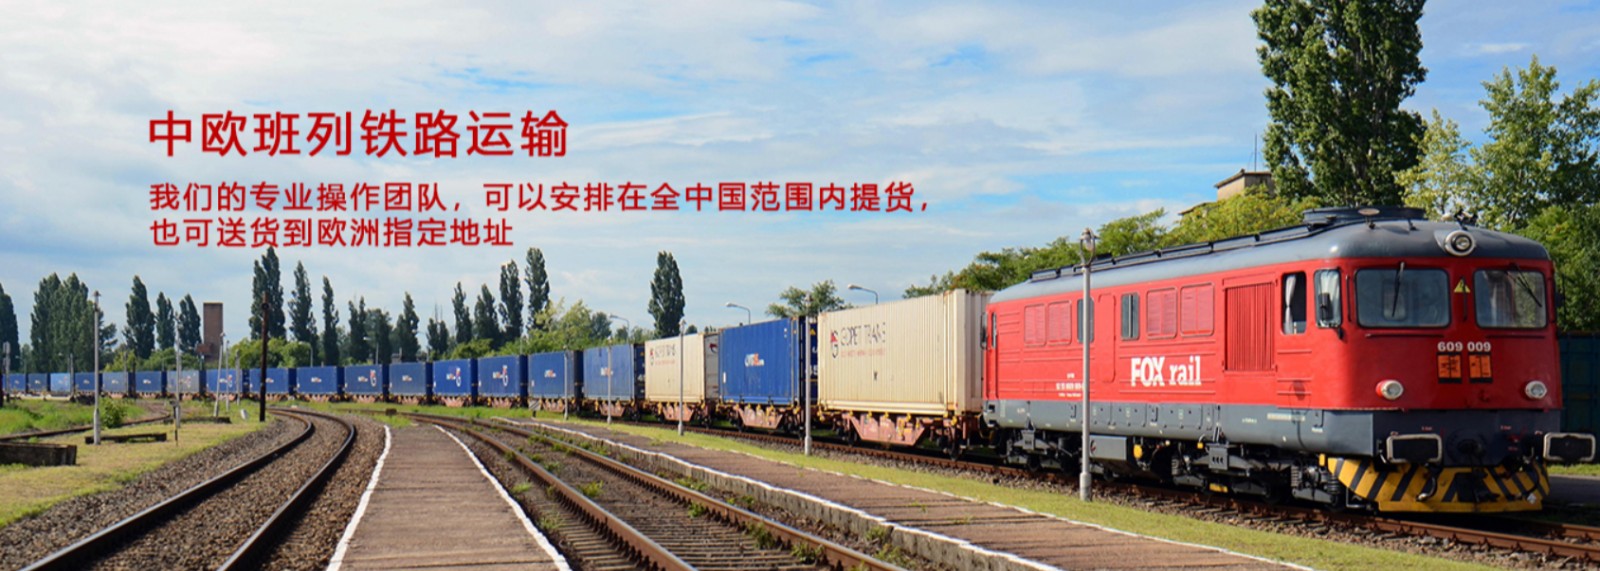 中国到法国铁路运输 中欧班列  法国专线 法国铁路整柜，法国铁路拼箱 法国FBA亚马逊 法国货运代理 法国国际物流